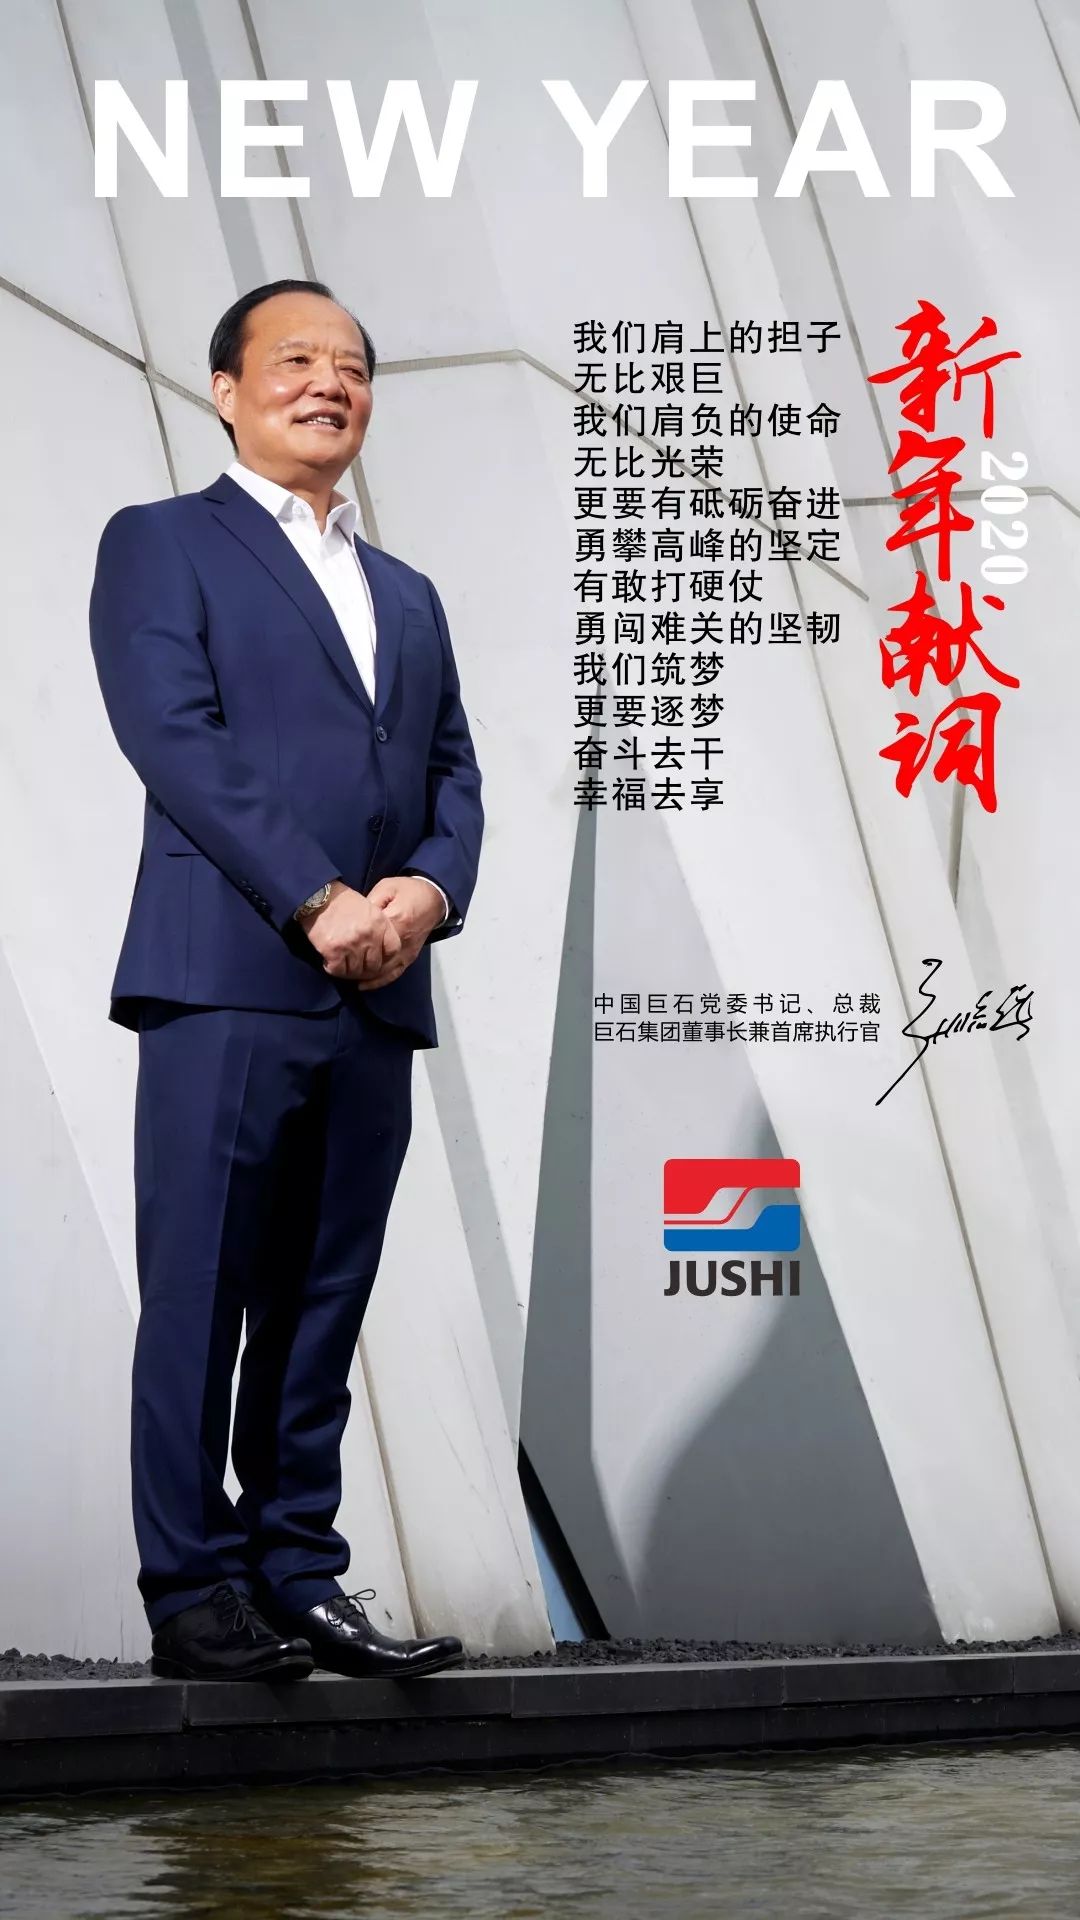 张毓强总裁发表2020年新年献词